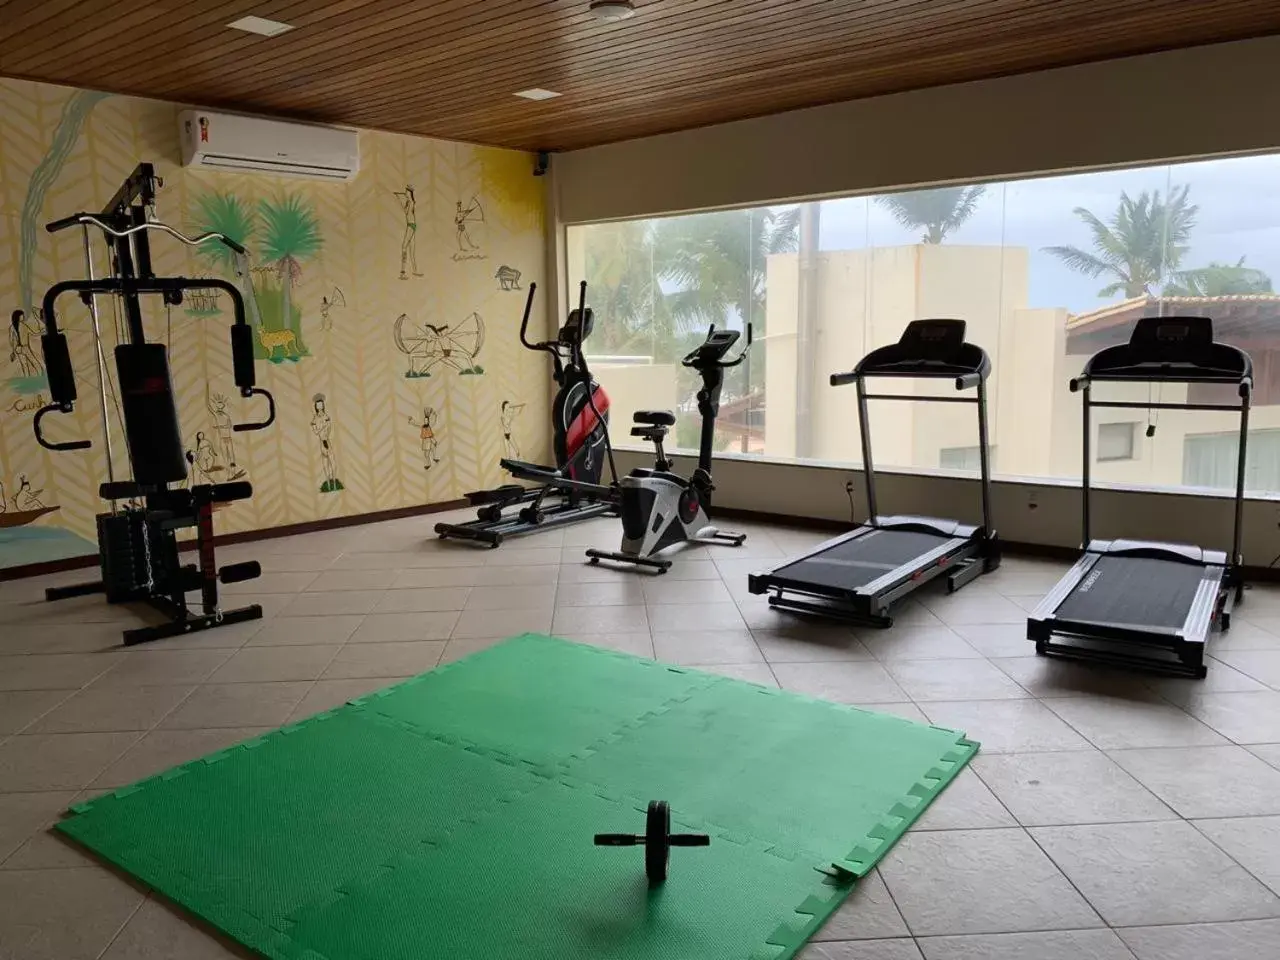 Fitness centre/facilities, Fitness Center/Facilities in CASA Di VINA Boutique Hotel